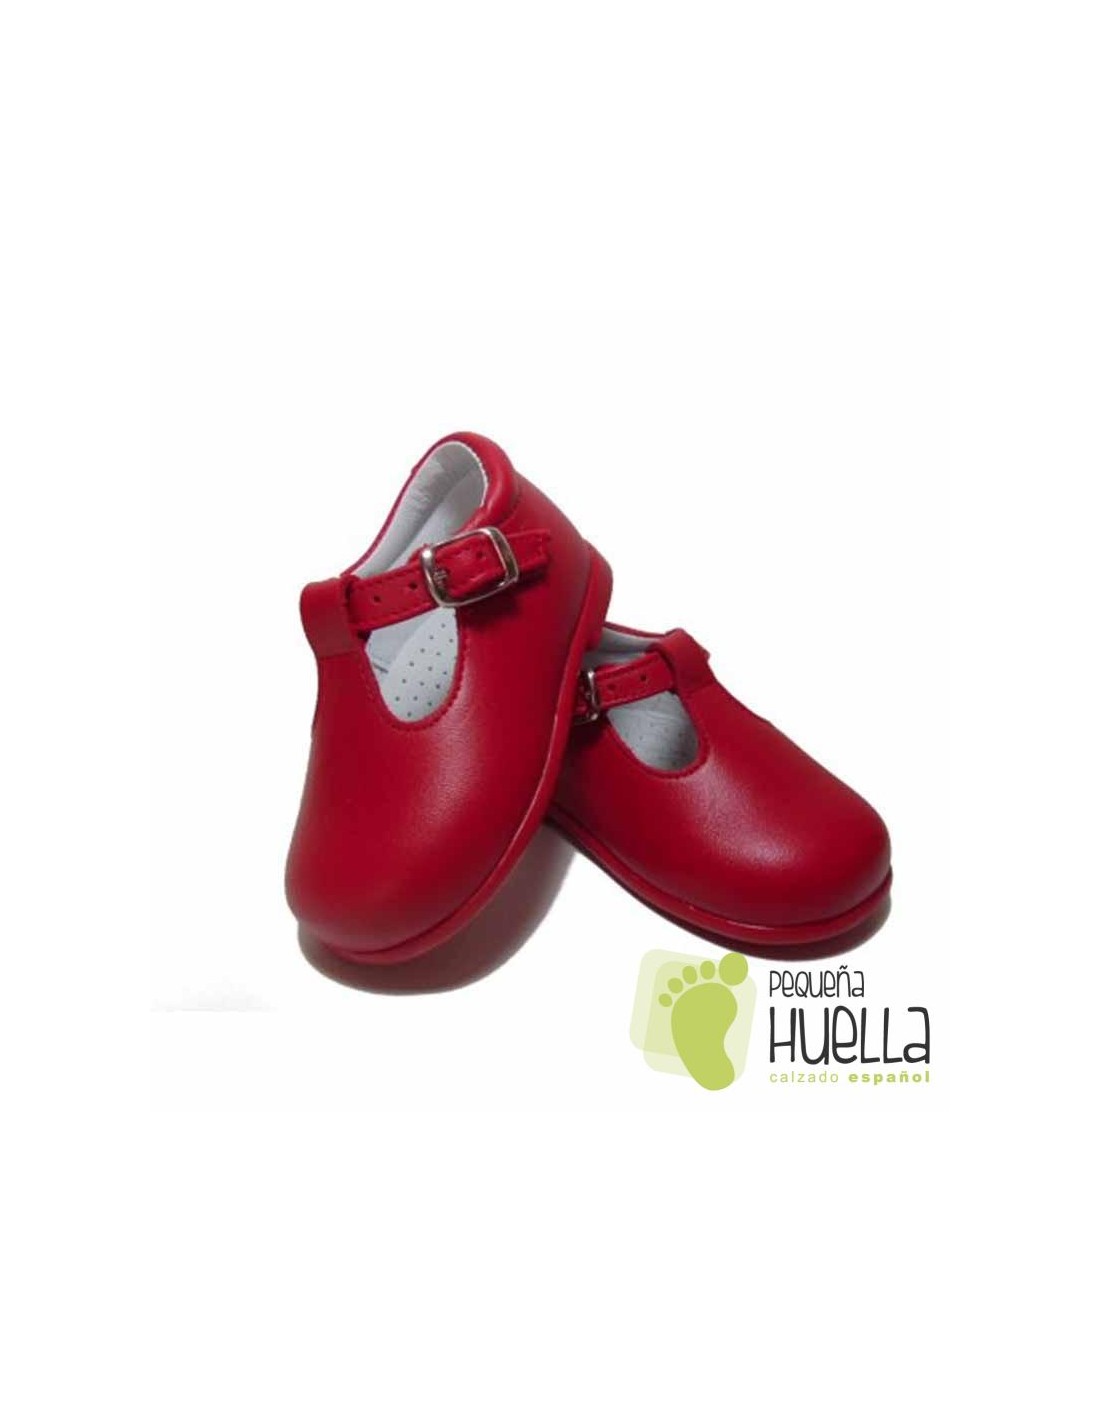 Generoso legumbres monigote de nieve Comprar zapatos pepitos rojos para niños con hebilla online